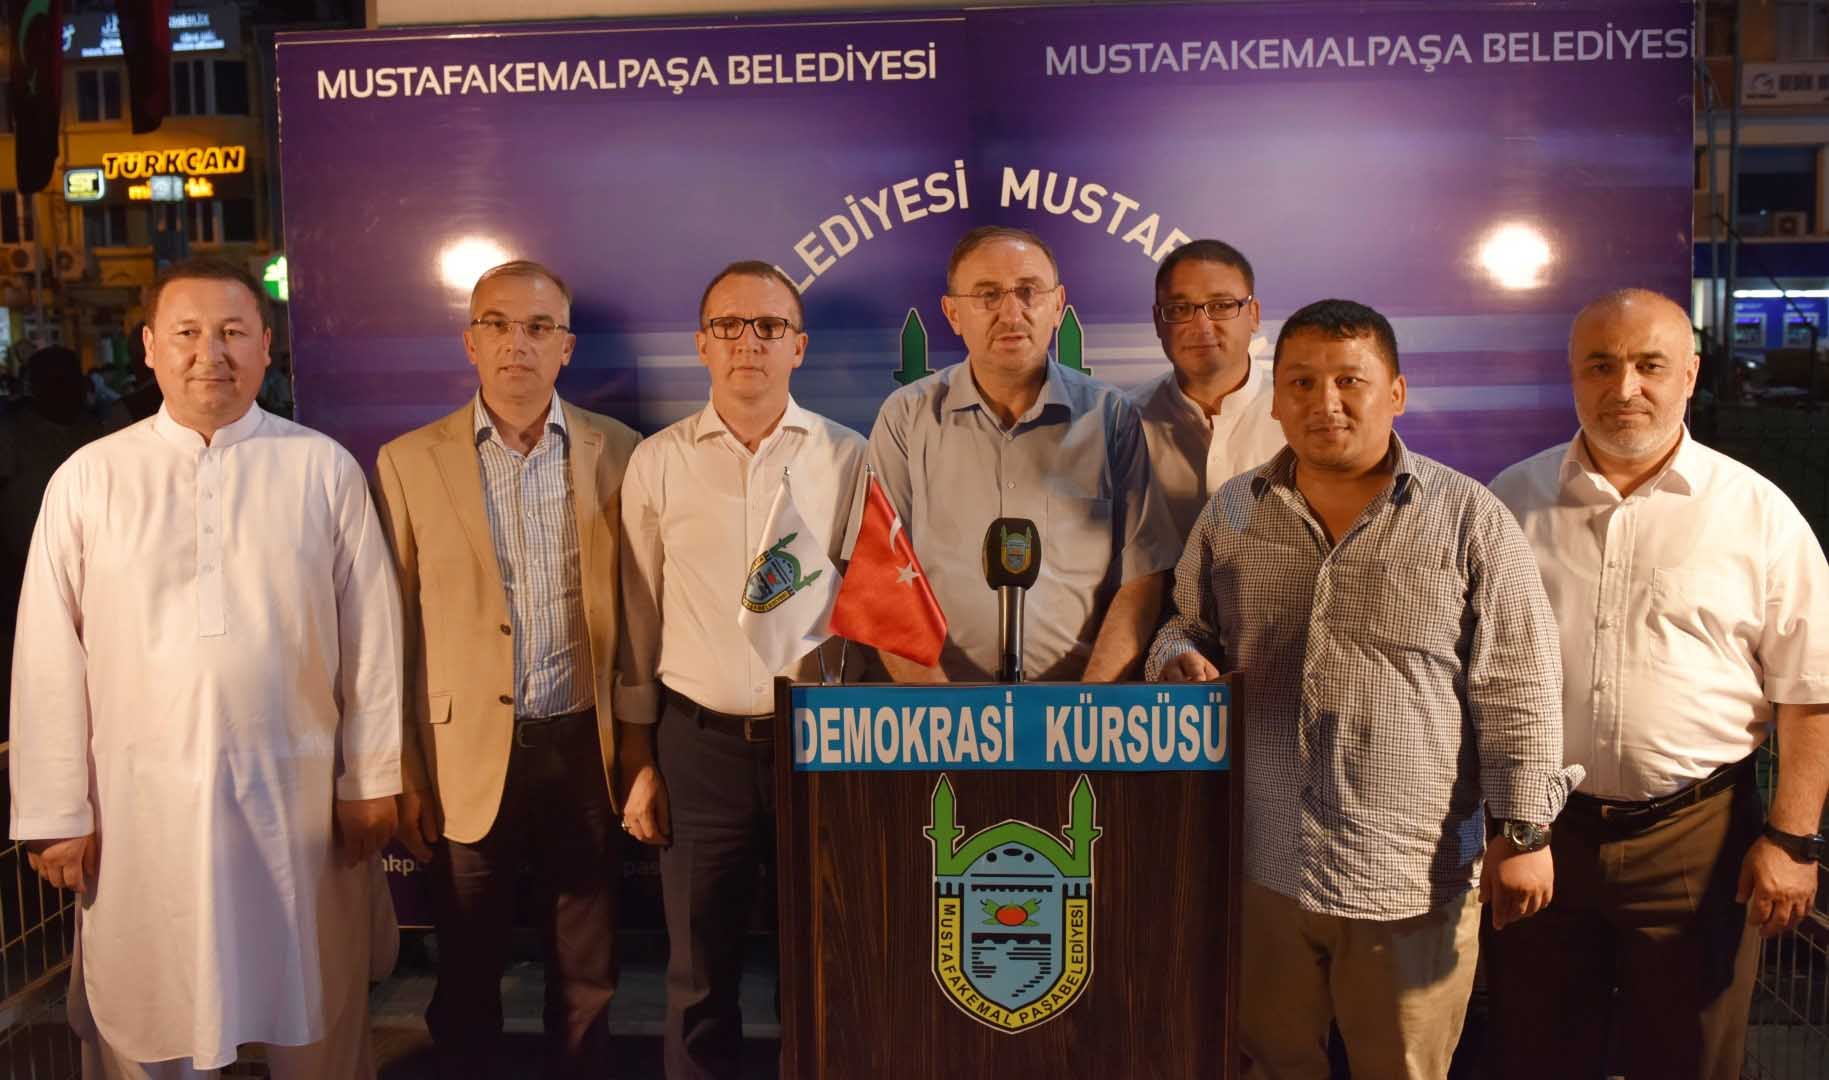 Mustafakemalpaşa'da demokrasi kürsüsü 